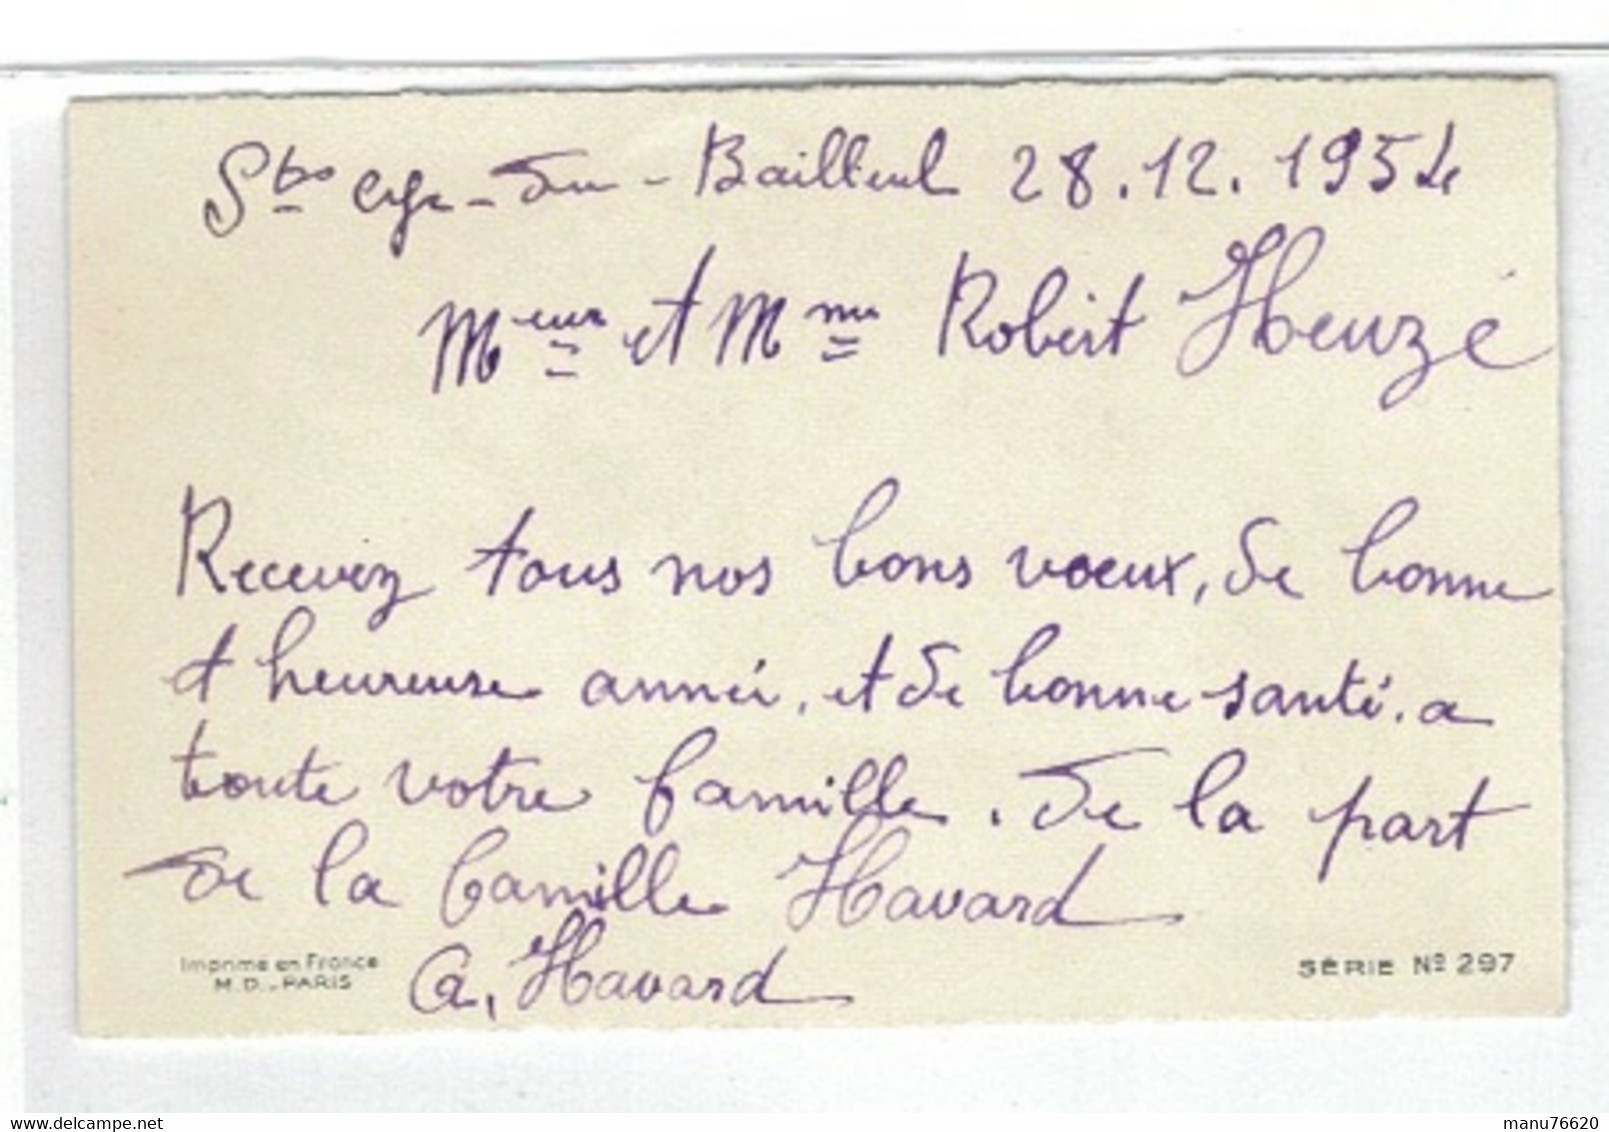 CARTE VOEUX ET BONNE ANNEE- Chasseur Et Fusil , Saint Cyr Du Bailleul , Manche-  28,12,1954 - - Nouvel An